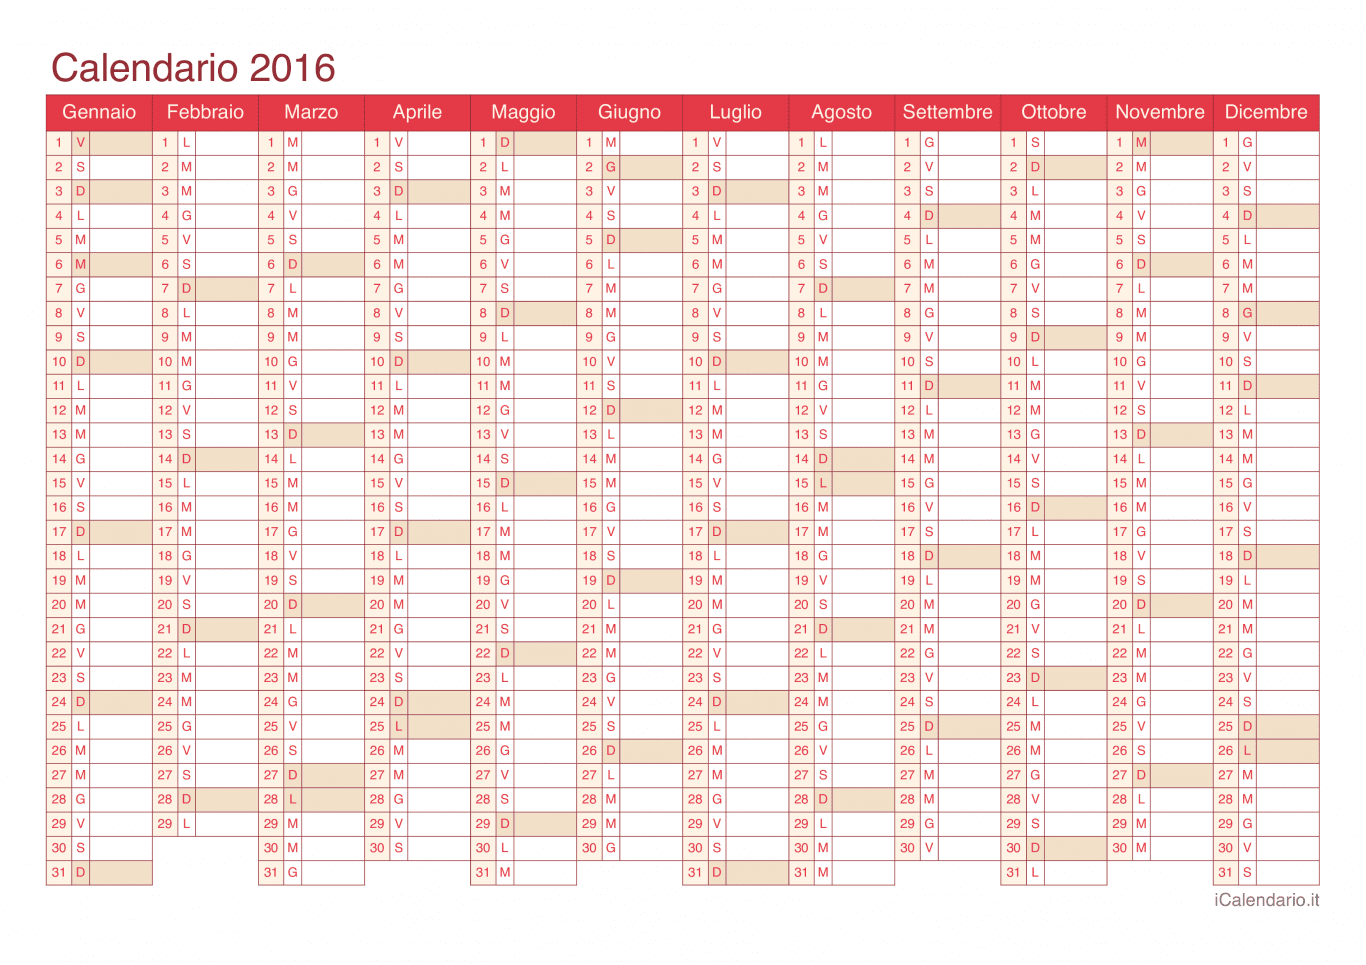 Calendario 2016 - Cherry